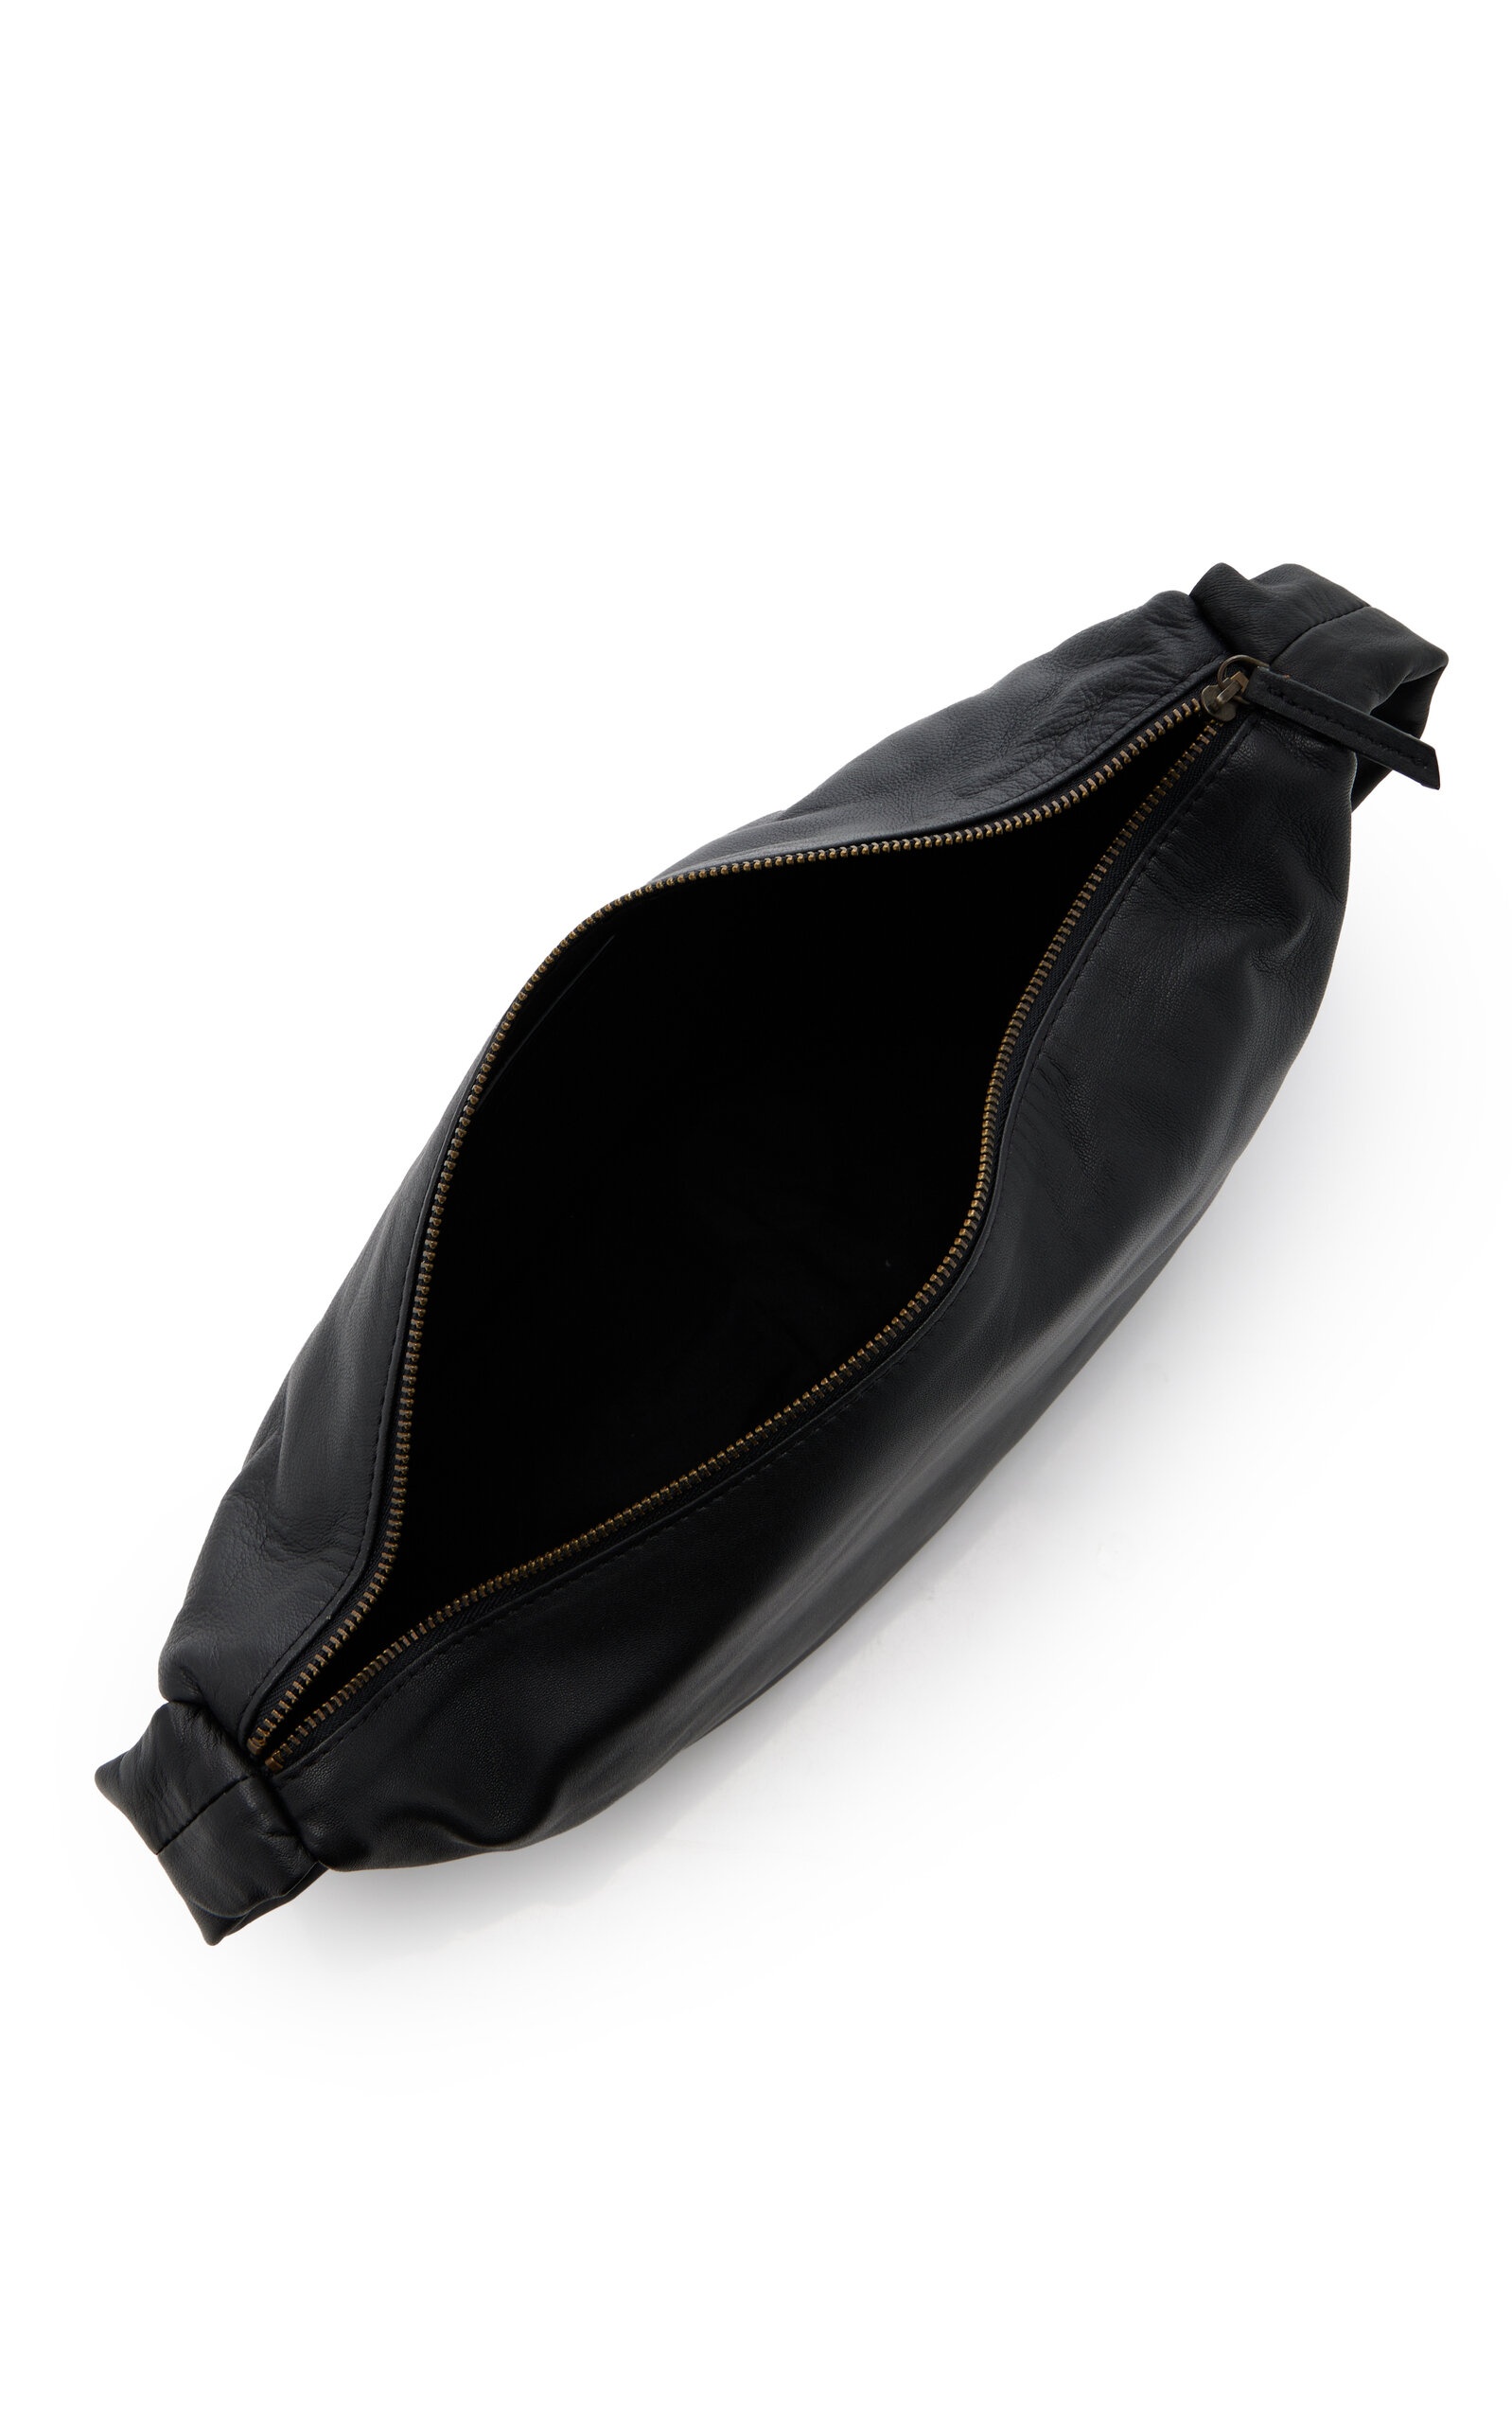 Crescent Leather Bag black - 6